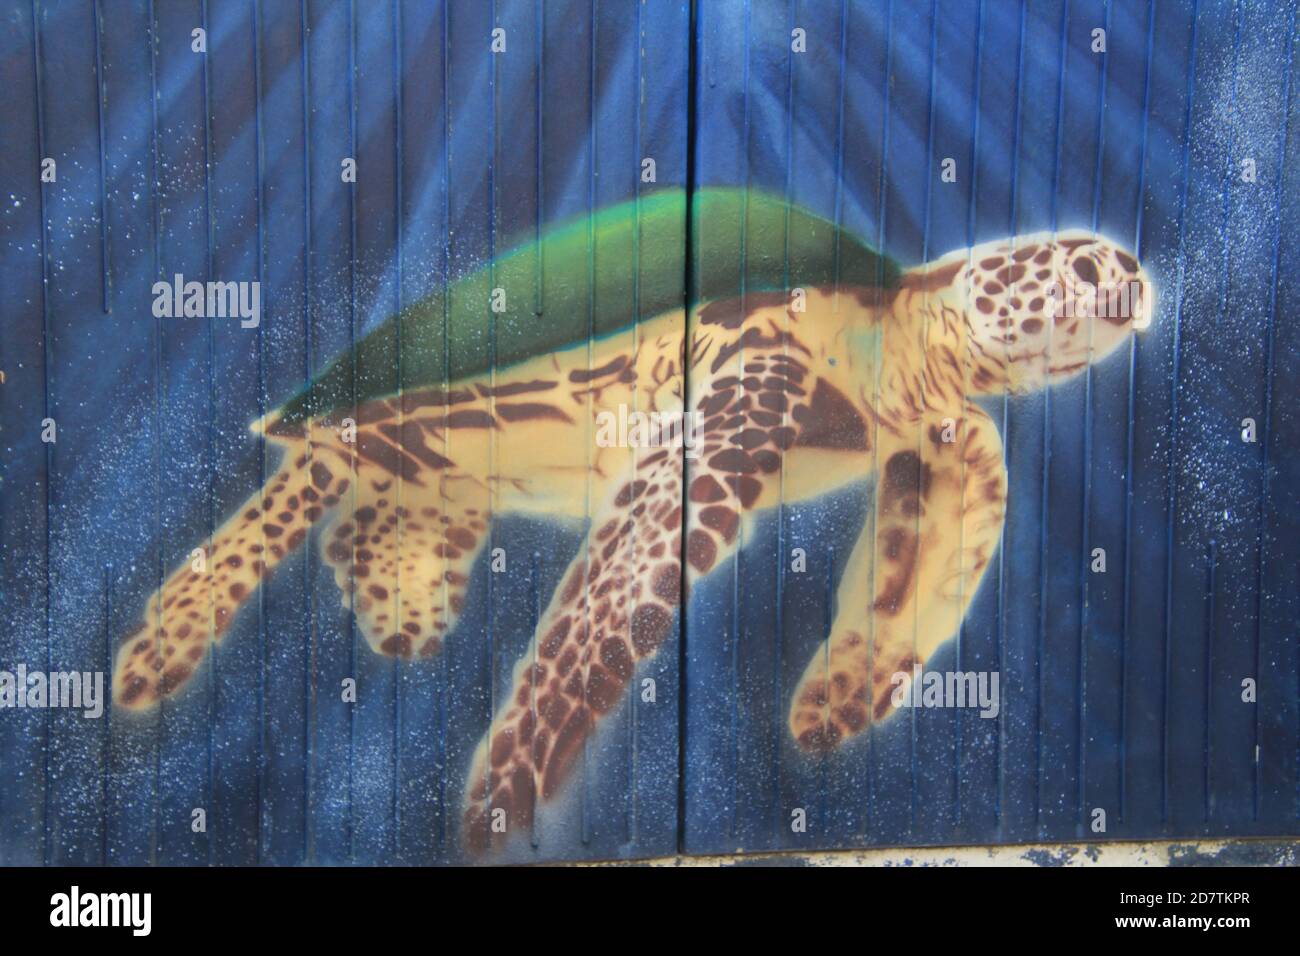 Streetart, Graffiti auf einem Stromkasten am Straßenrand, der Künstler Hat den Kasten mit einer Meeres-Schildkröte verziert. Foto de stock